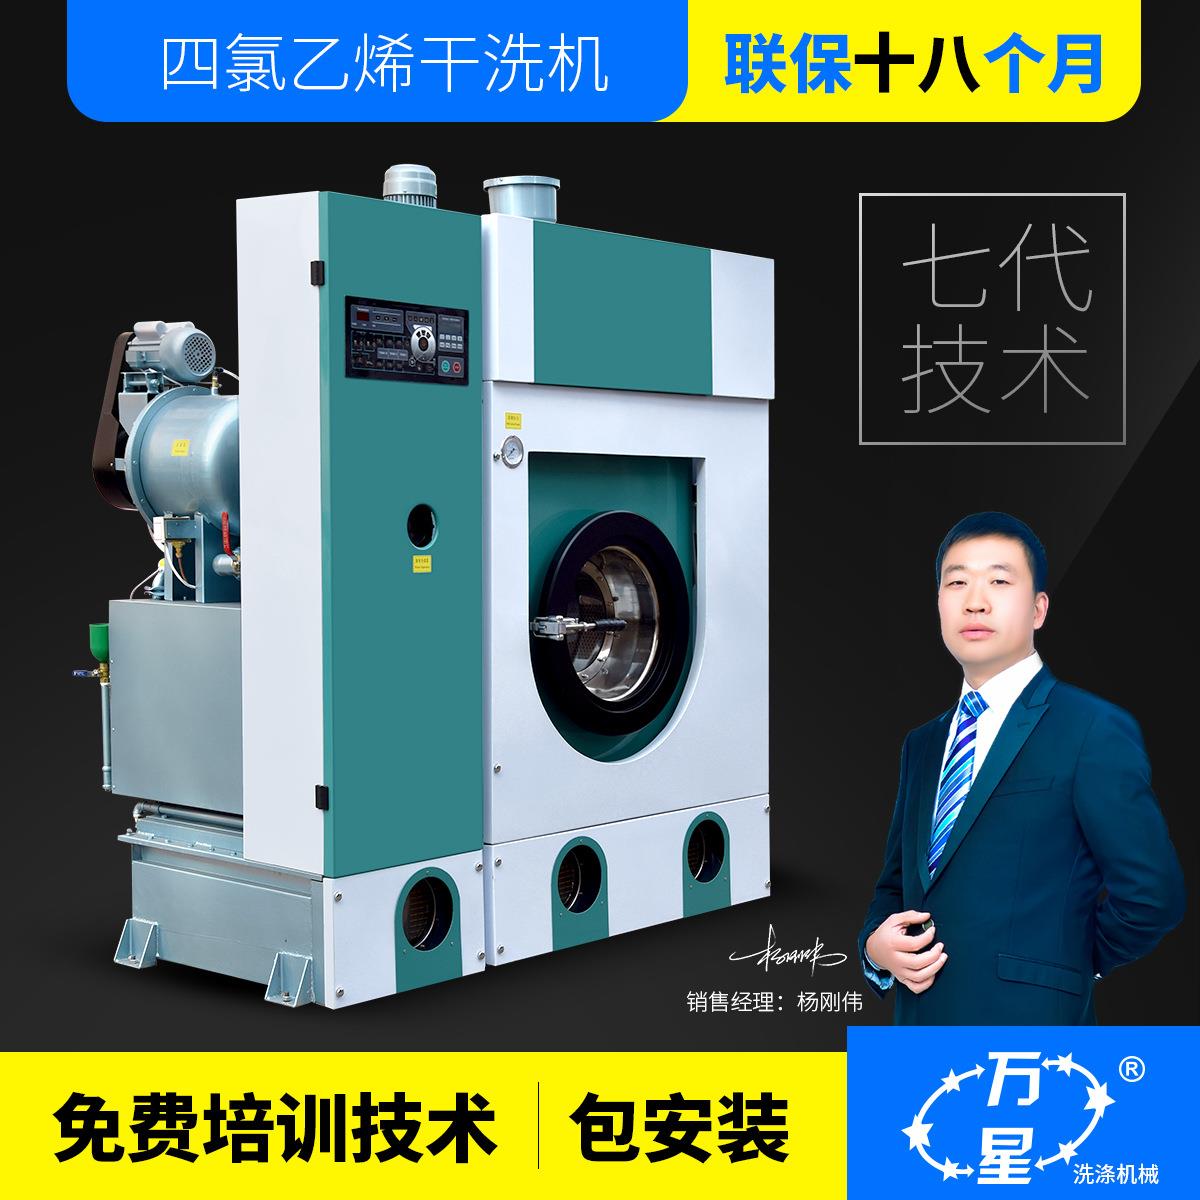 上海厂家直销全封闭18kg干洗机干洗店洗涤设备干洗店全套设备